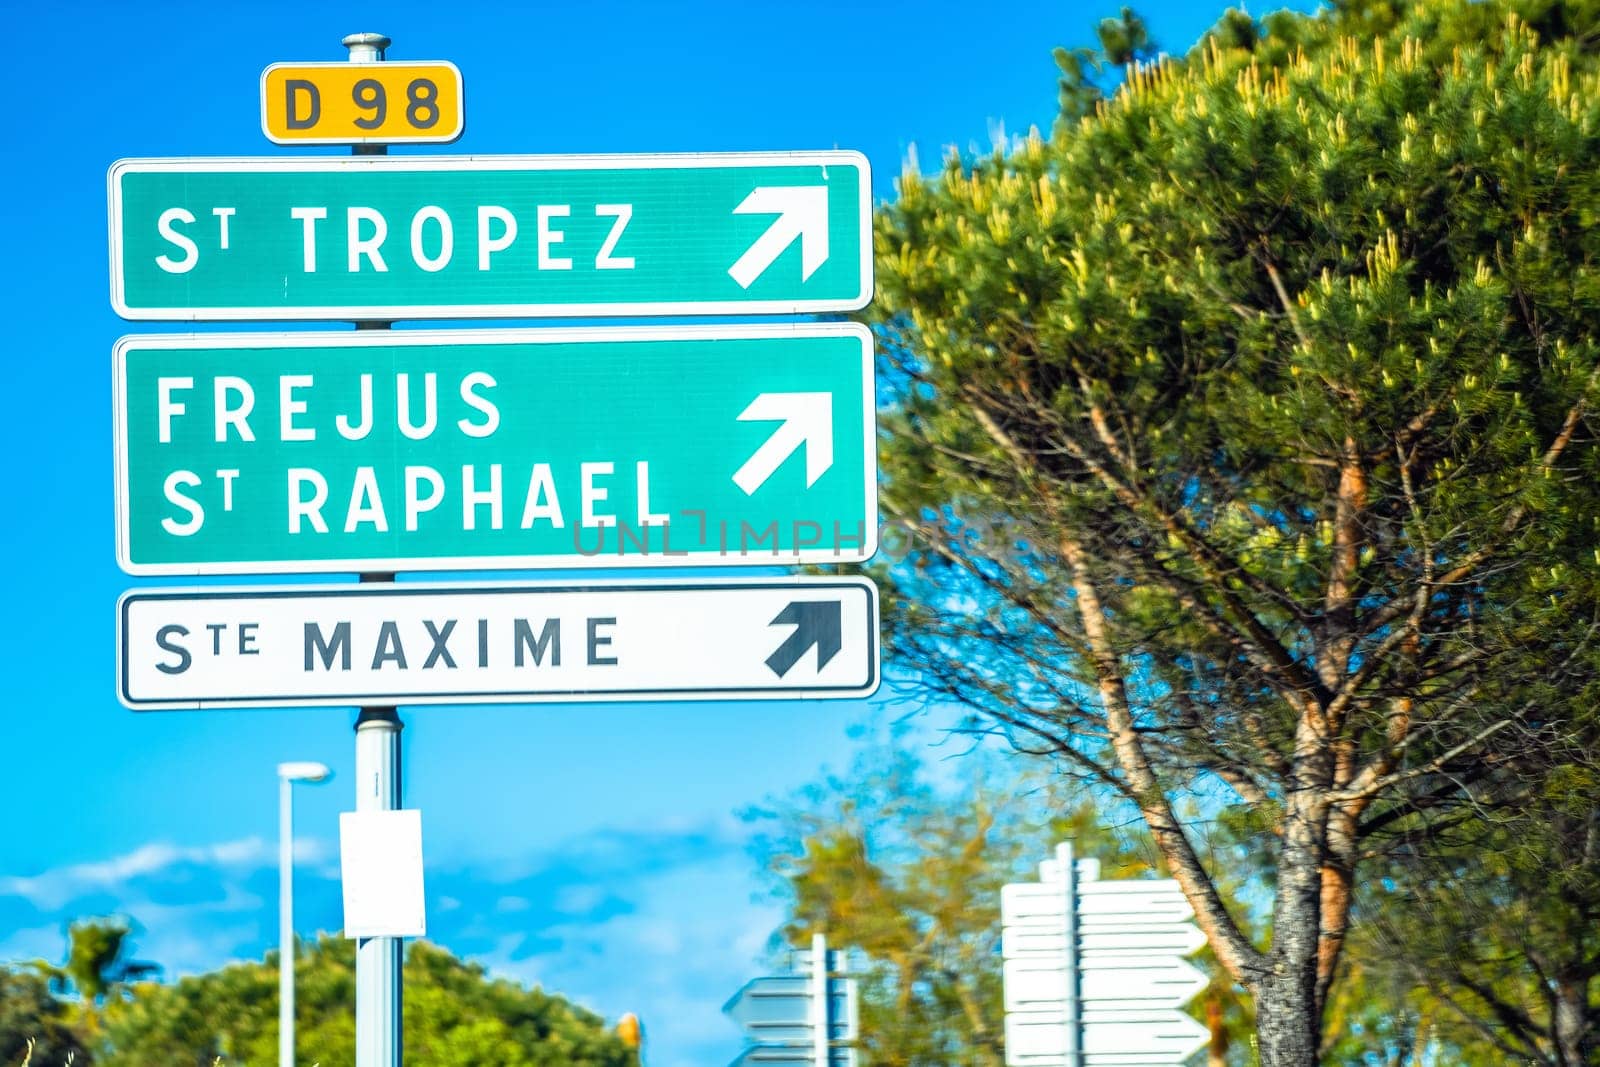 Cote d Azur road sign to Saint Tropez, south of France